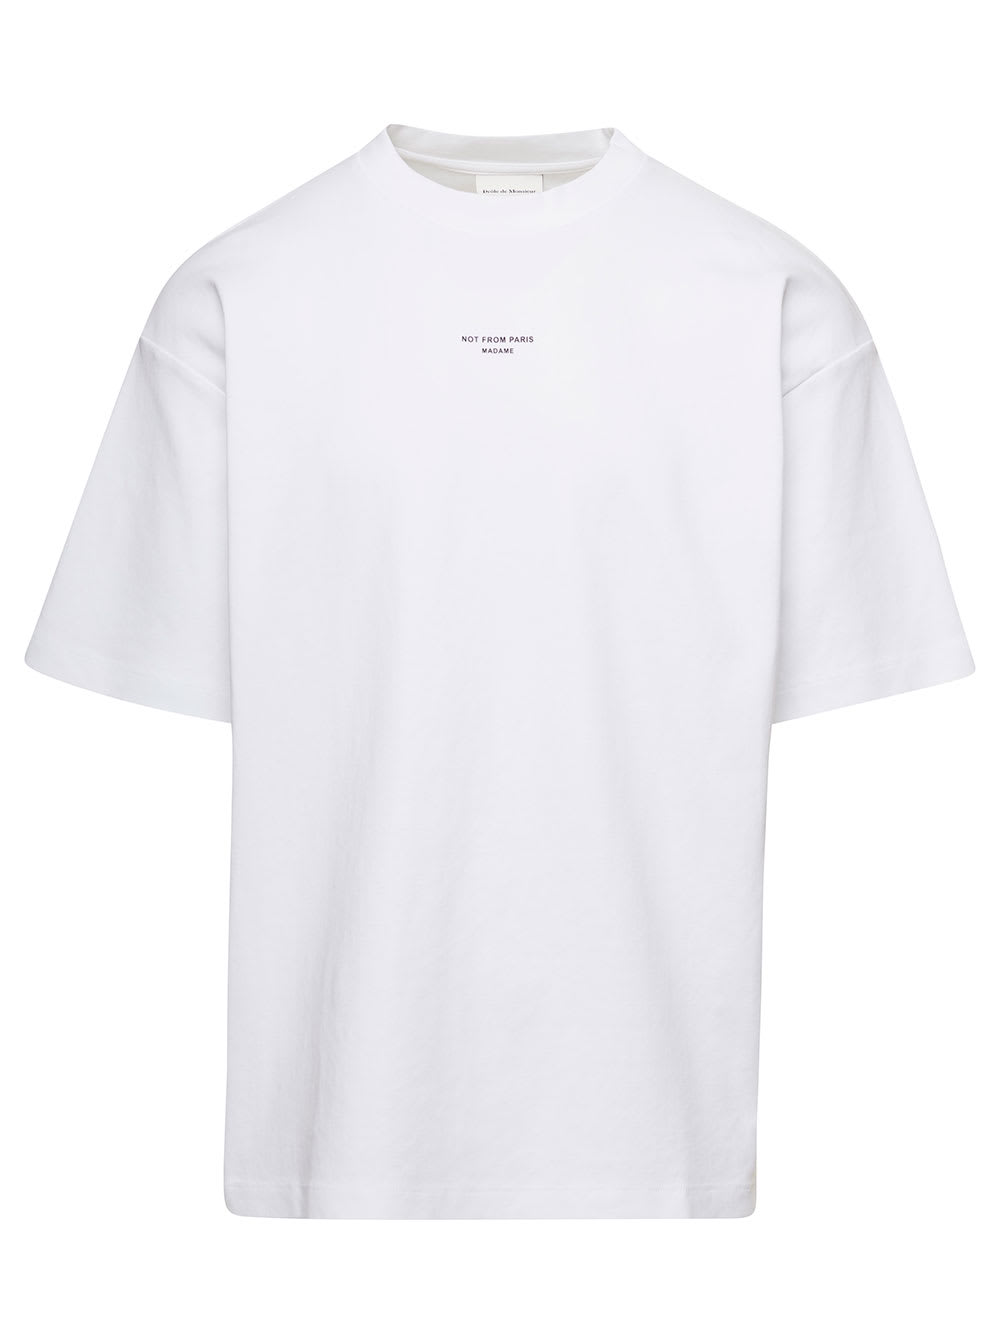 Shop Drôle De Monsieur White Crewneck T-shirt With Not From Paris Print In Cotton Man